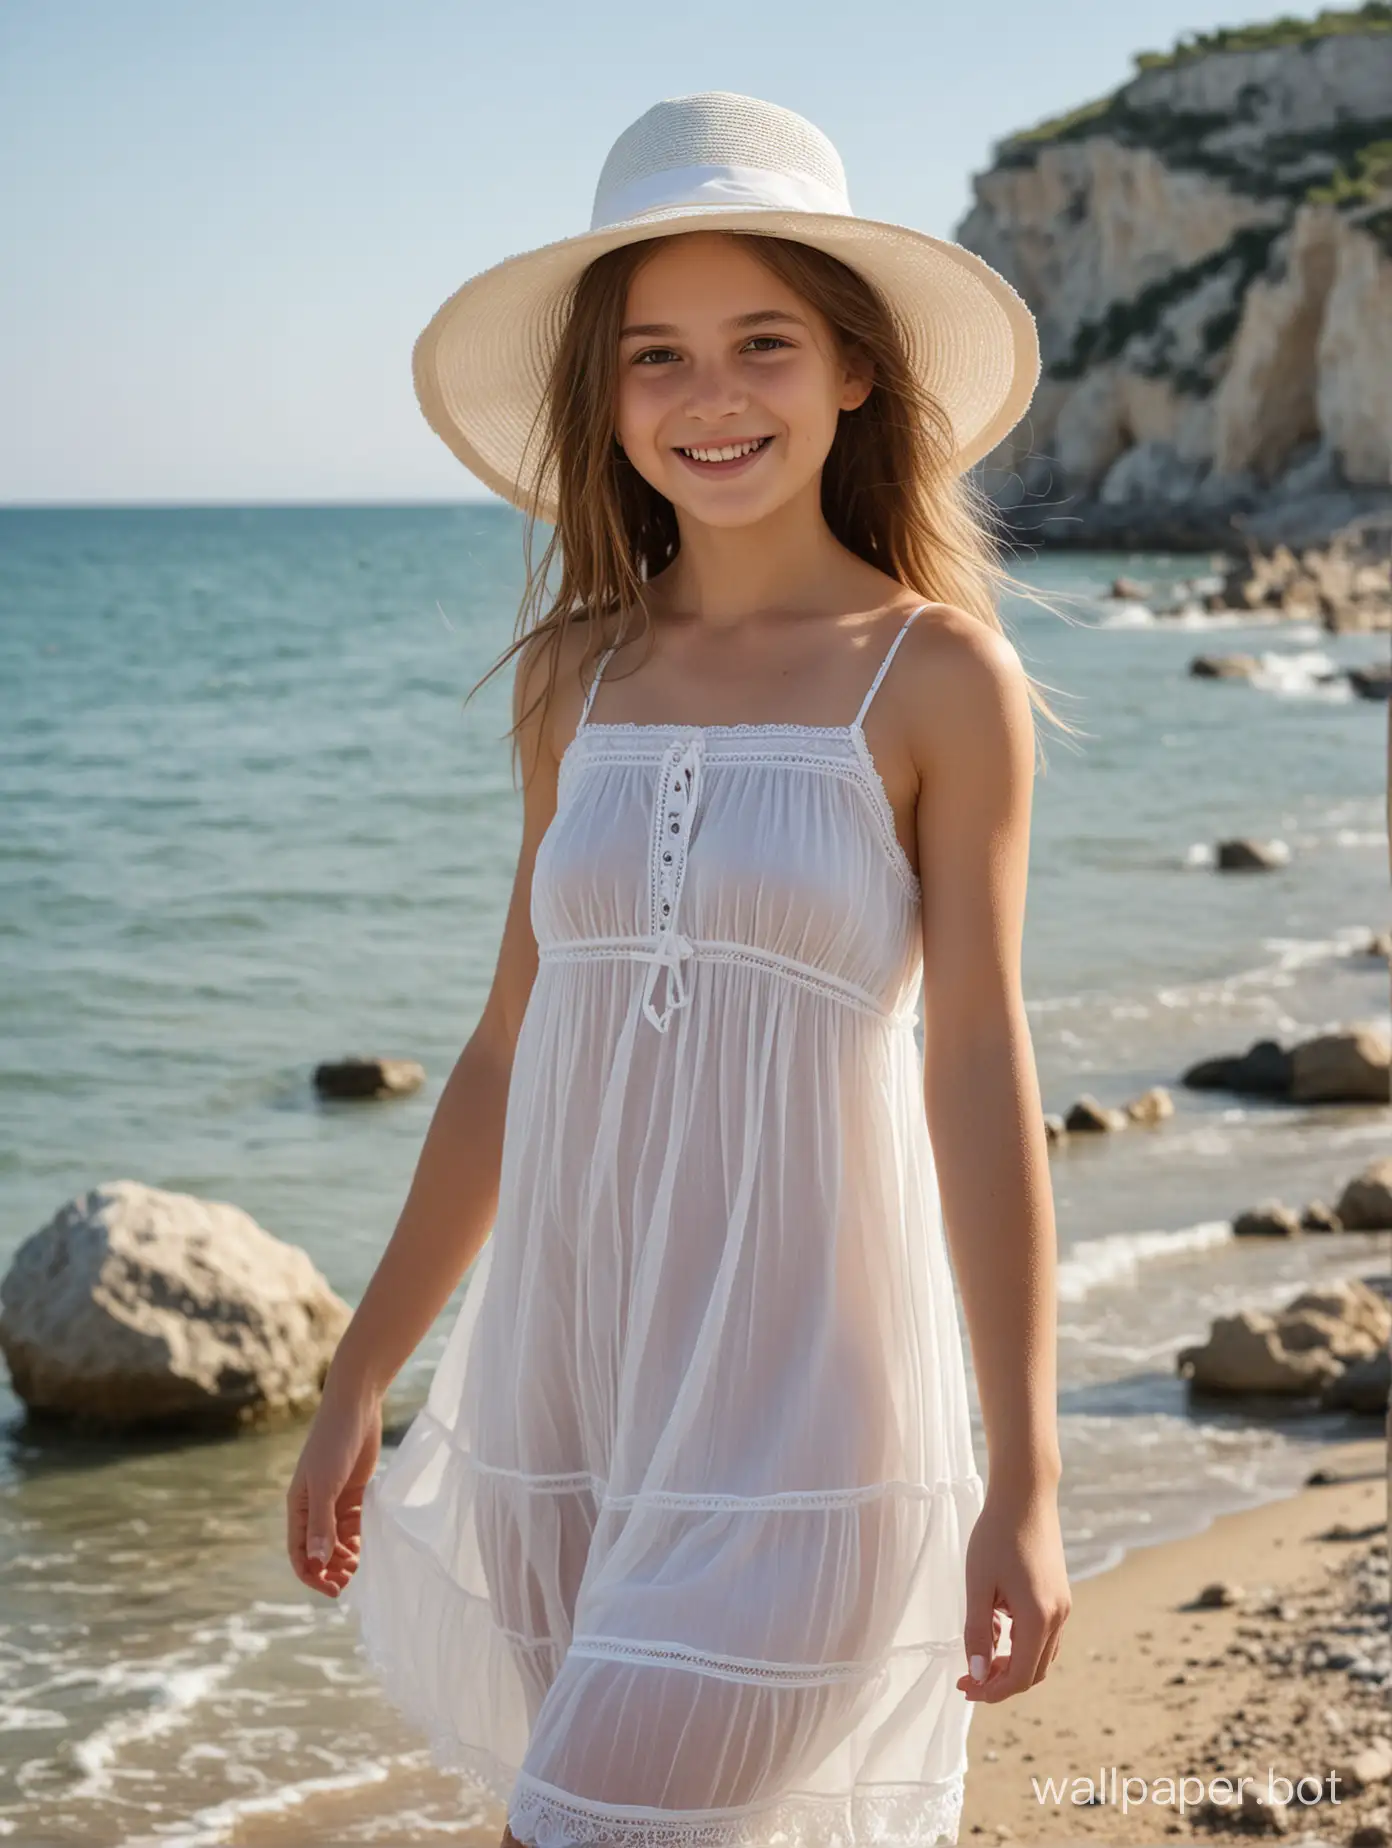 голая девочка 12 лет в Крыму у моря, короткое лёгкое летнее платье на голое тело, просвечивающаяся одежде, белая шляпка, улыбка, в полный рост, динамичные позы